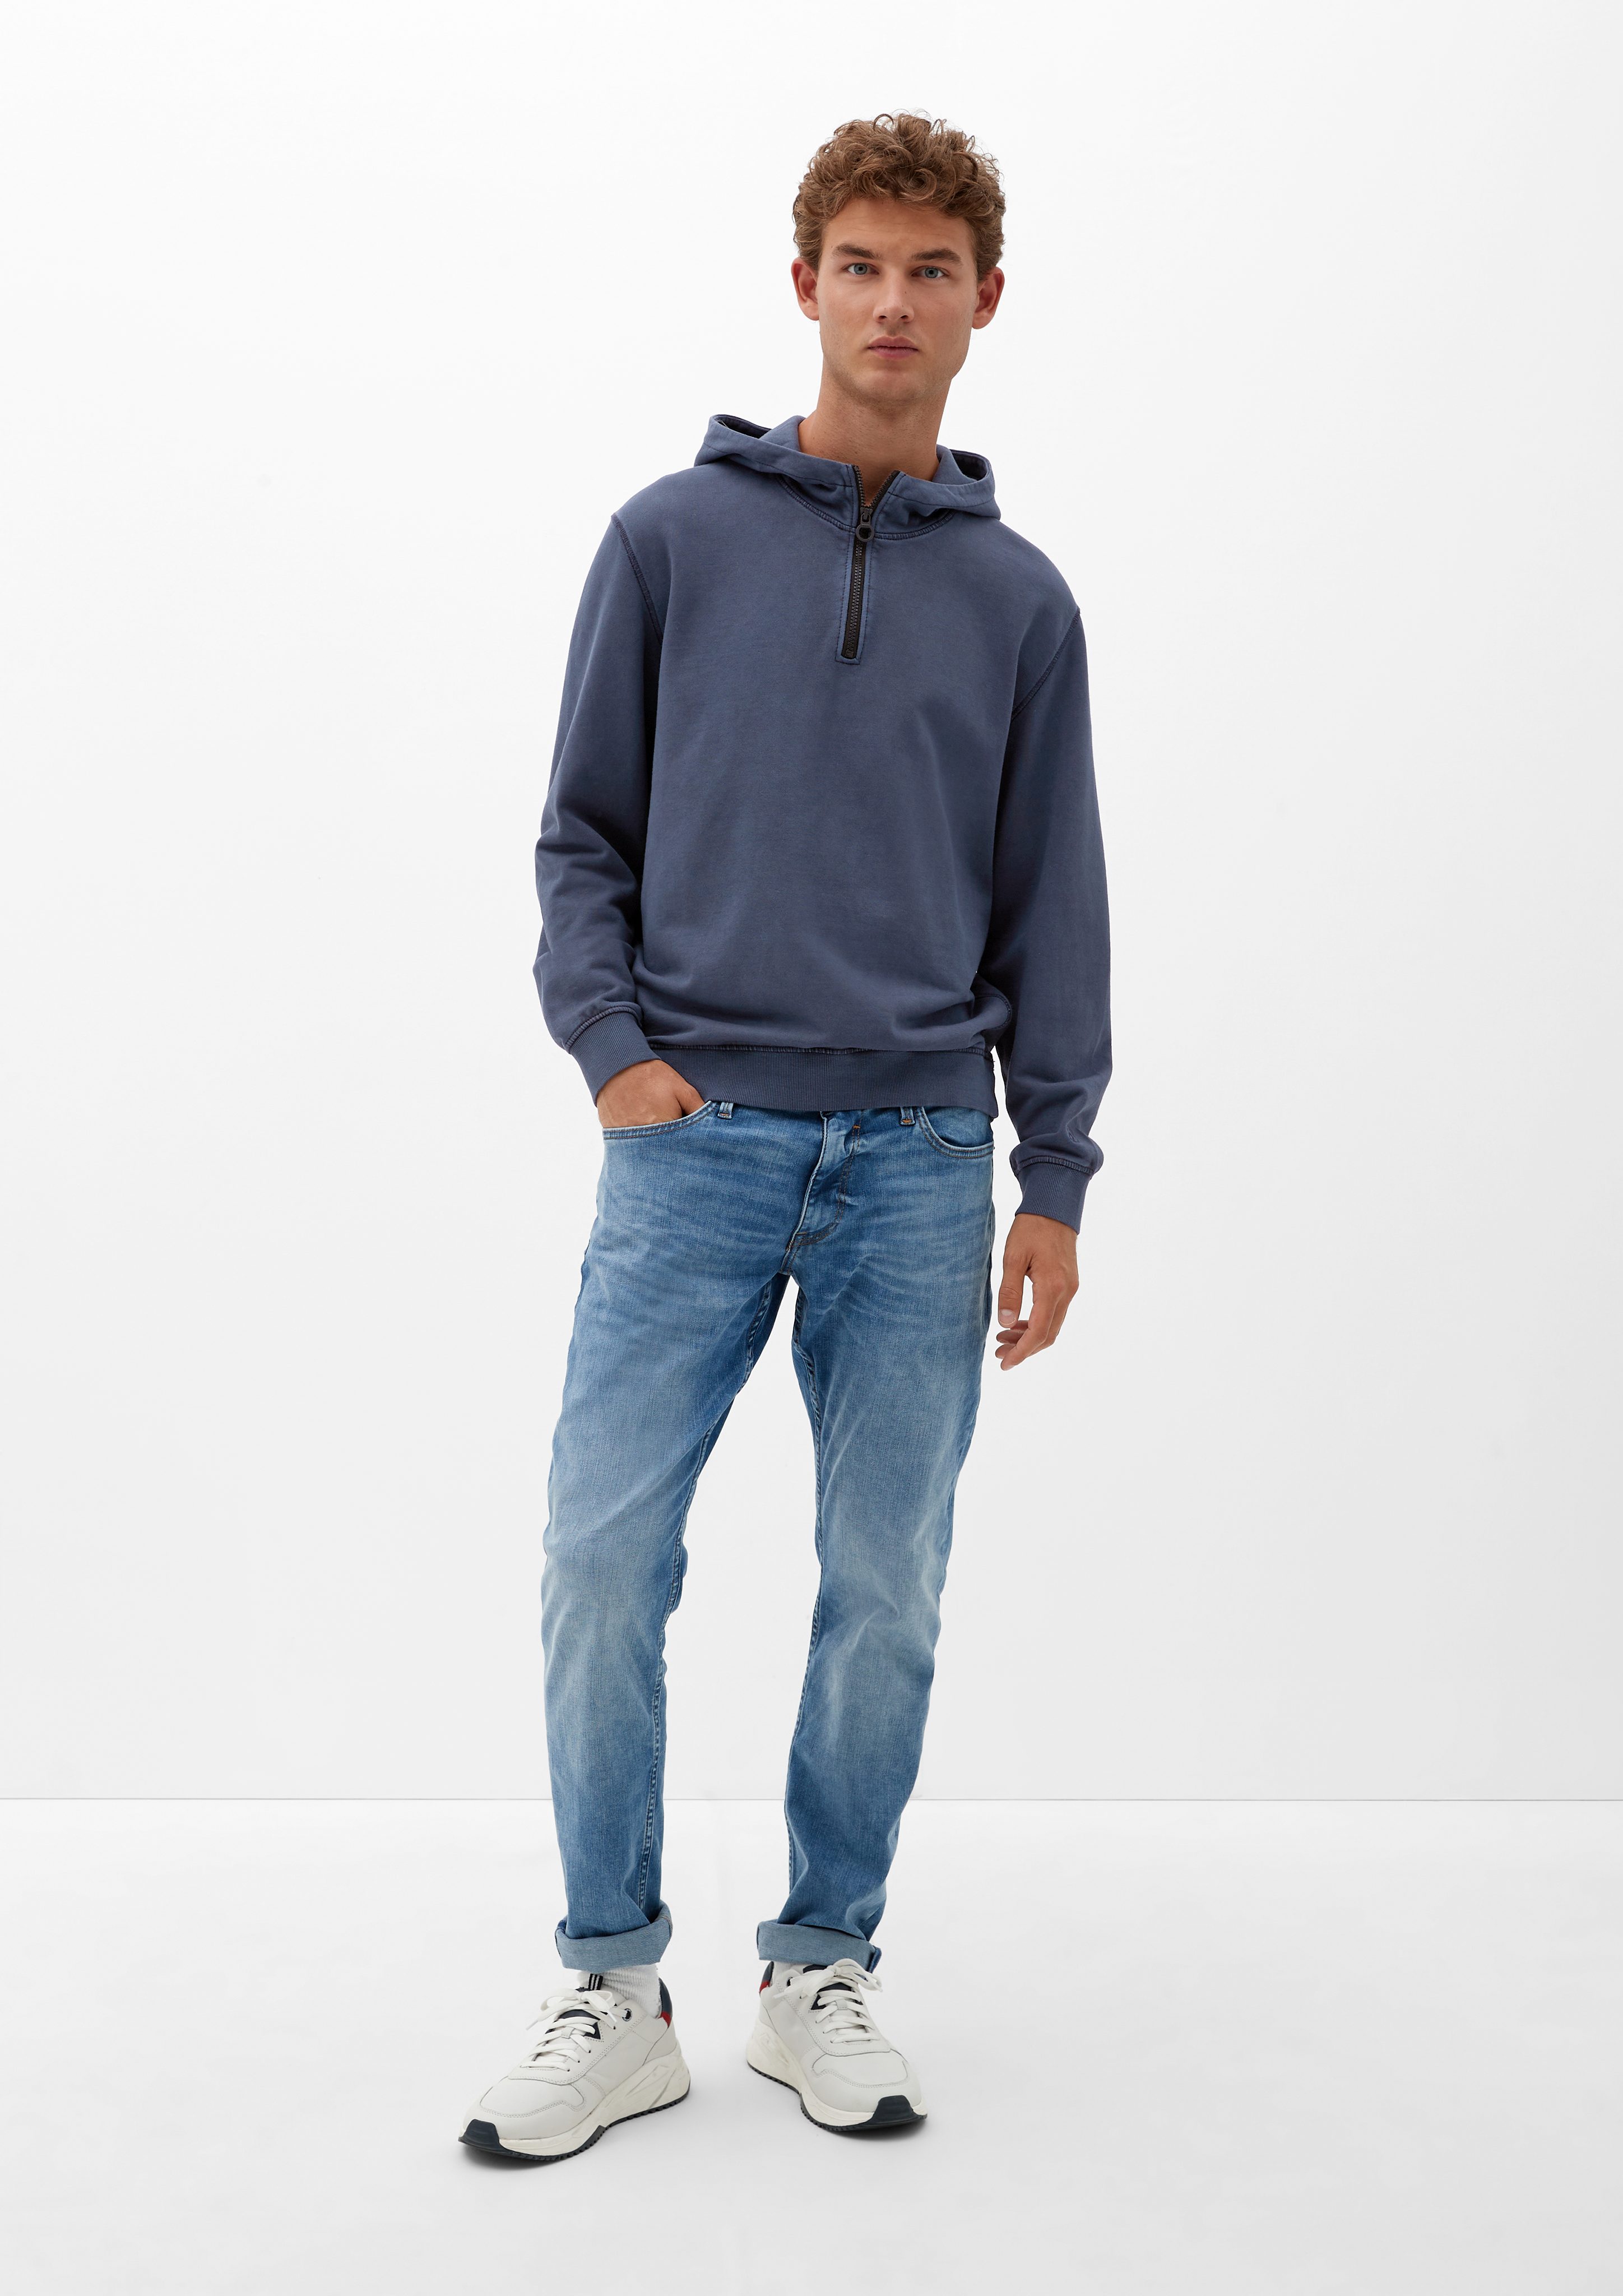 s.Oliver Sweatshirt mit Kapuzensweater Zipper Waschung navy